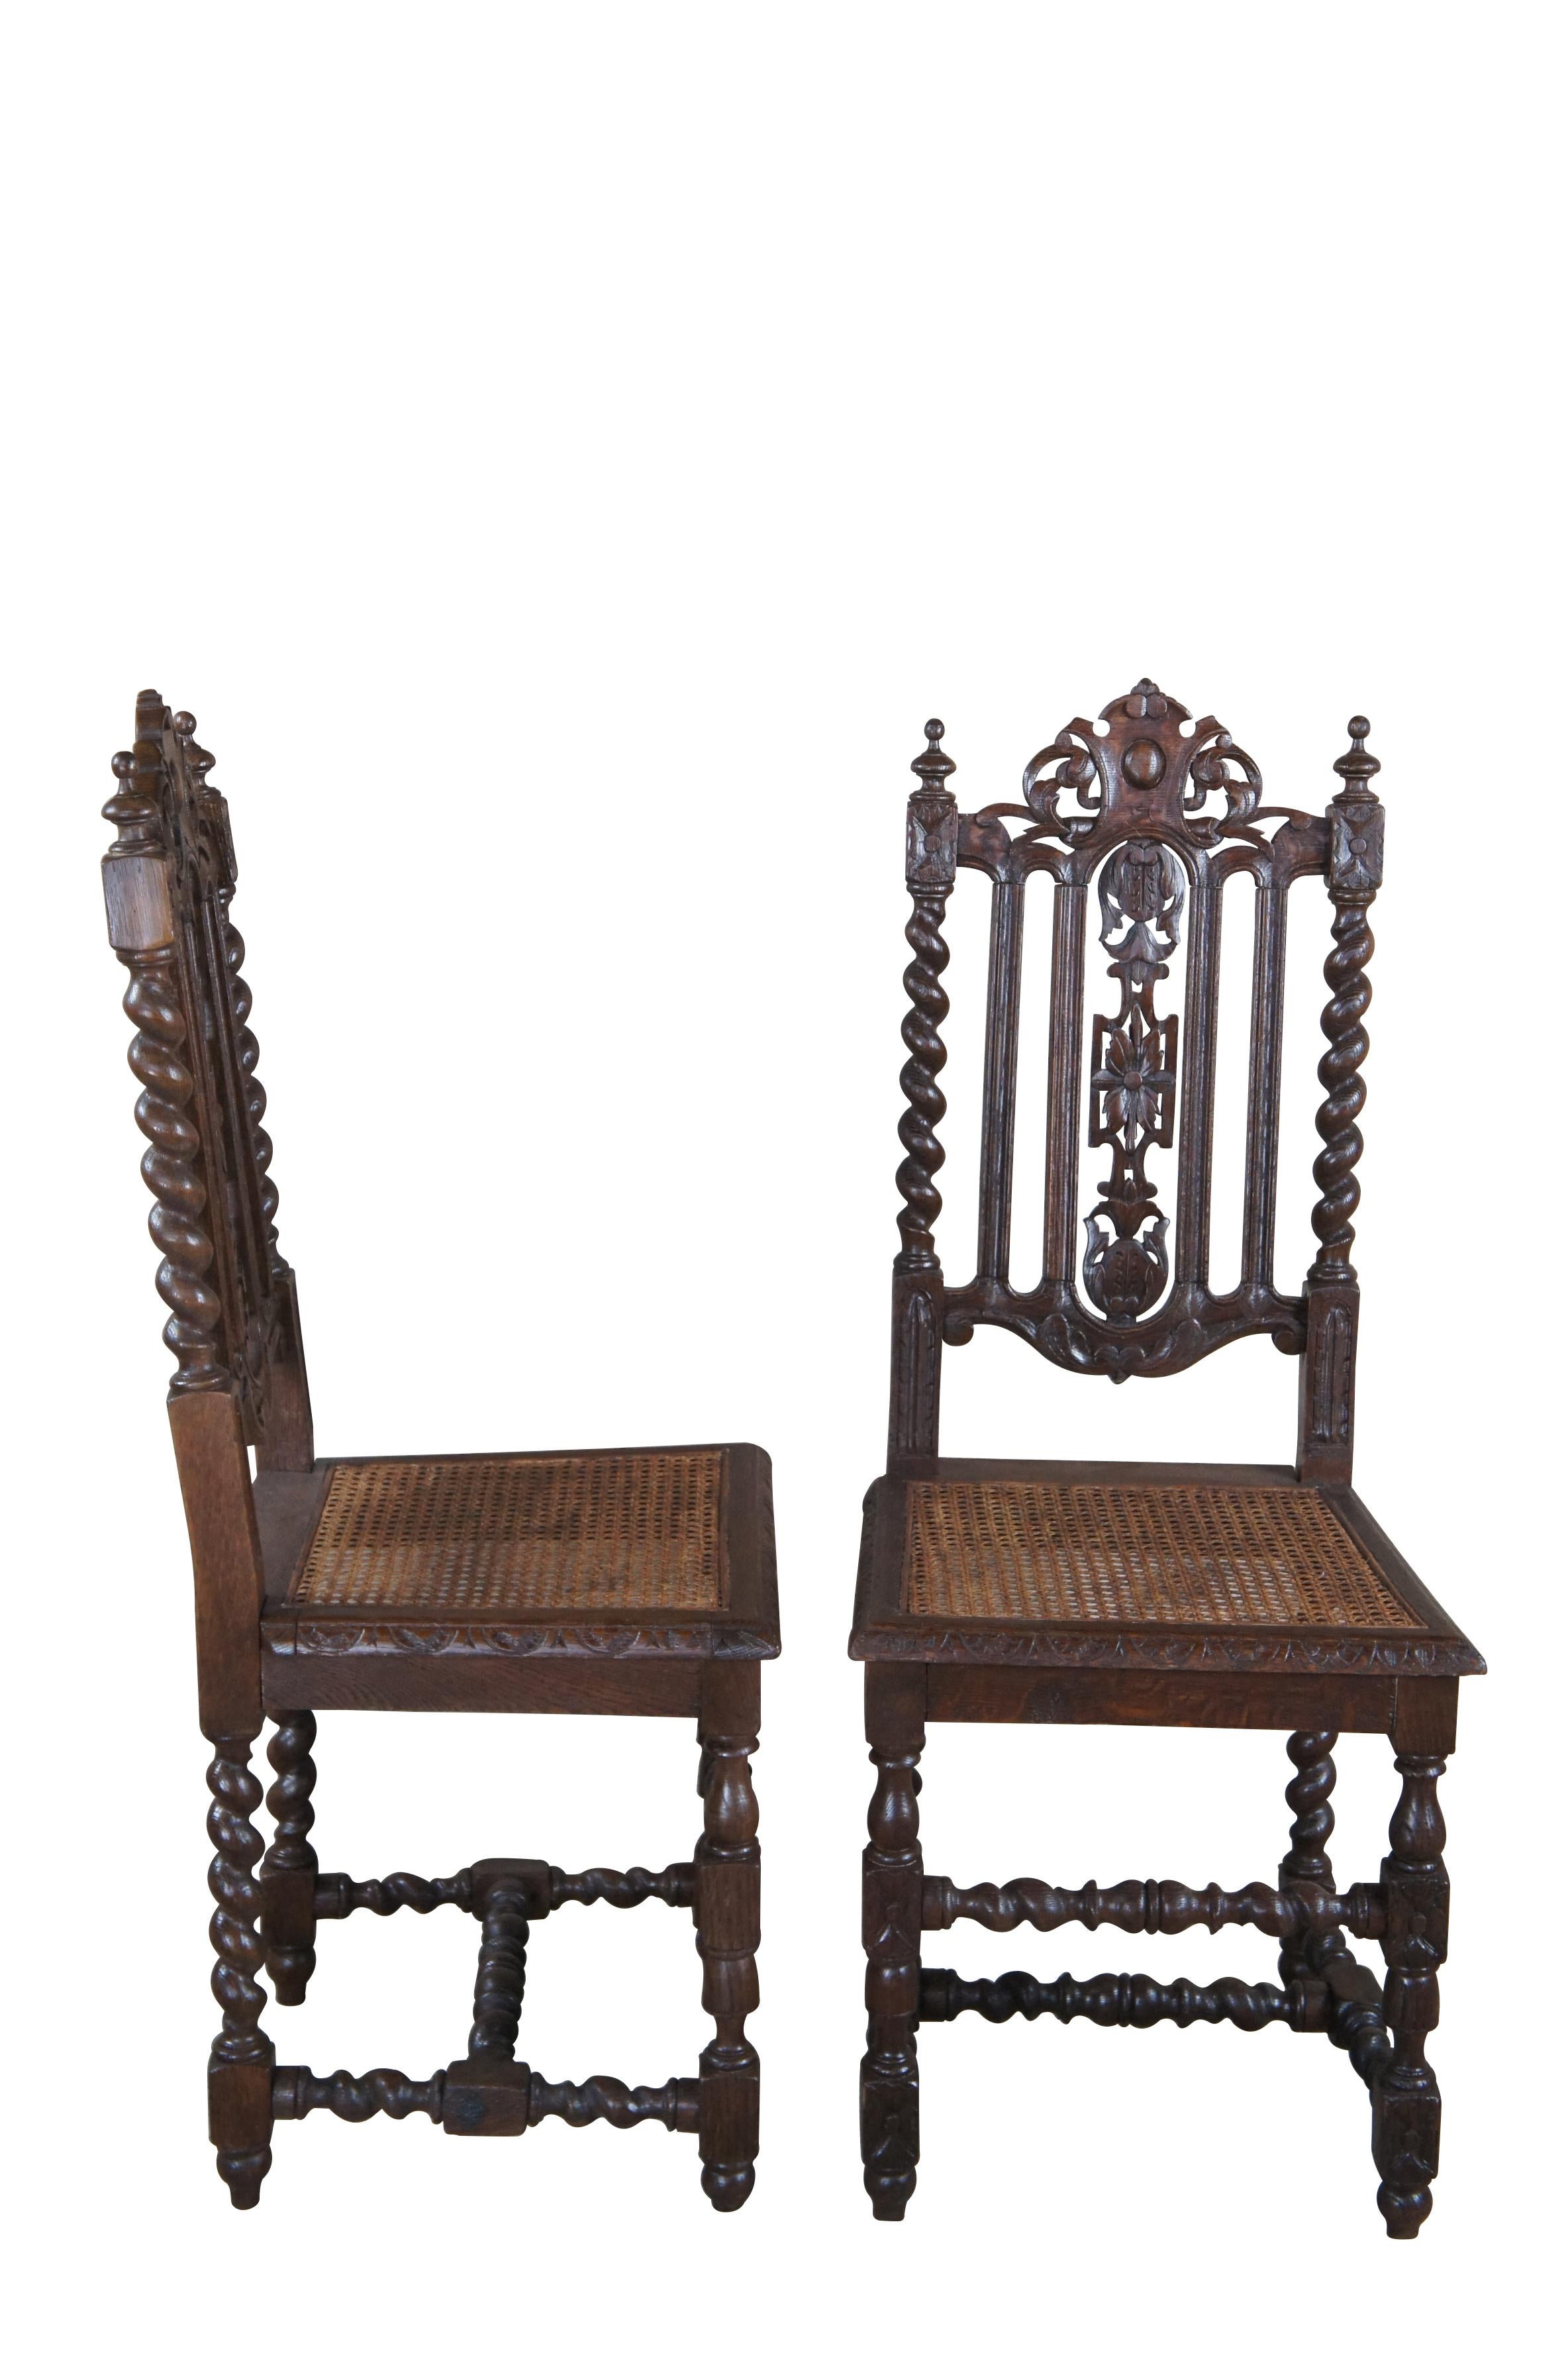 Ensemble de 3 chaises de salle à manger anciennes de la Renaissance française.  Magnifiquement réalisé avec des cadres en chêne sculptés de manière baroque, avec des dos percés et des supports en torsion d'orge.  Les sièges en canne tressée sont